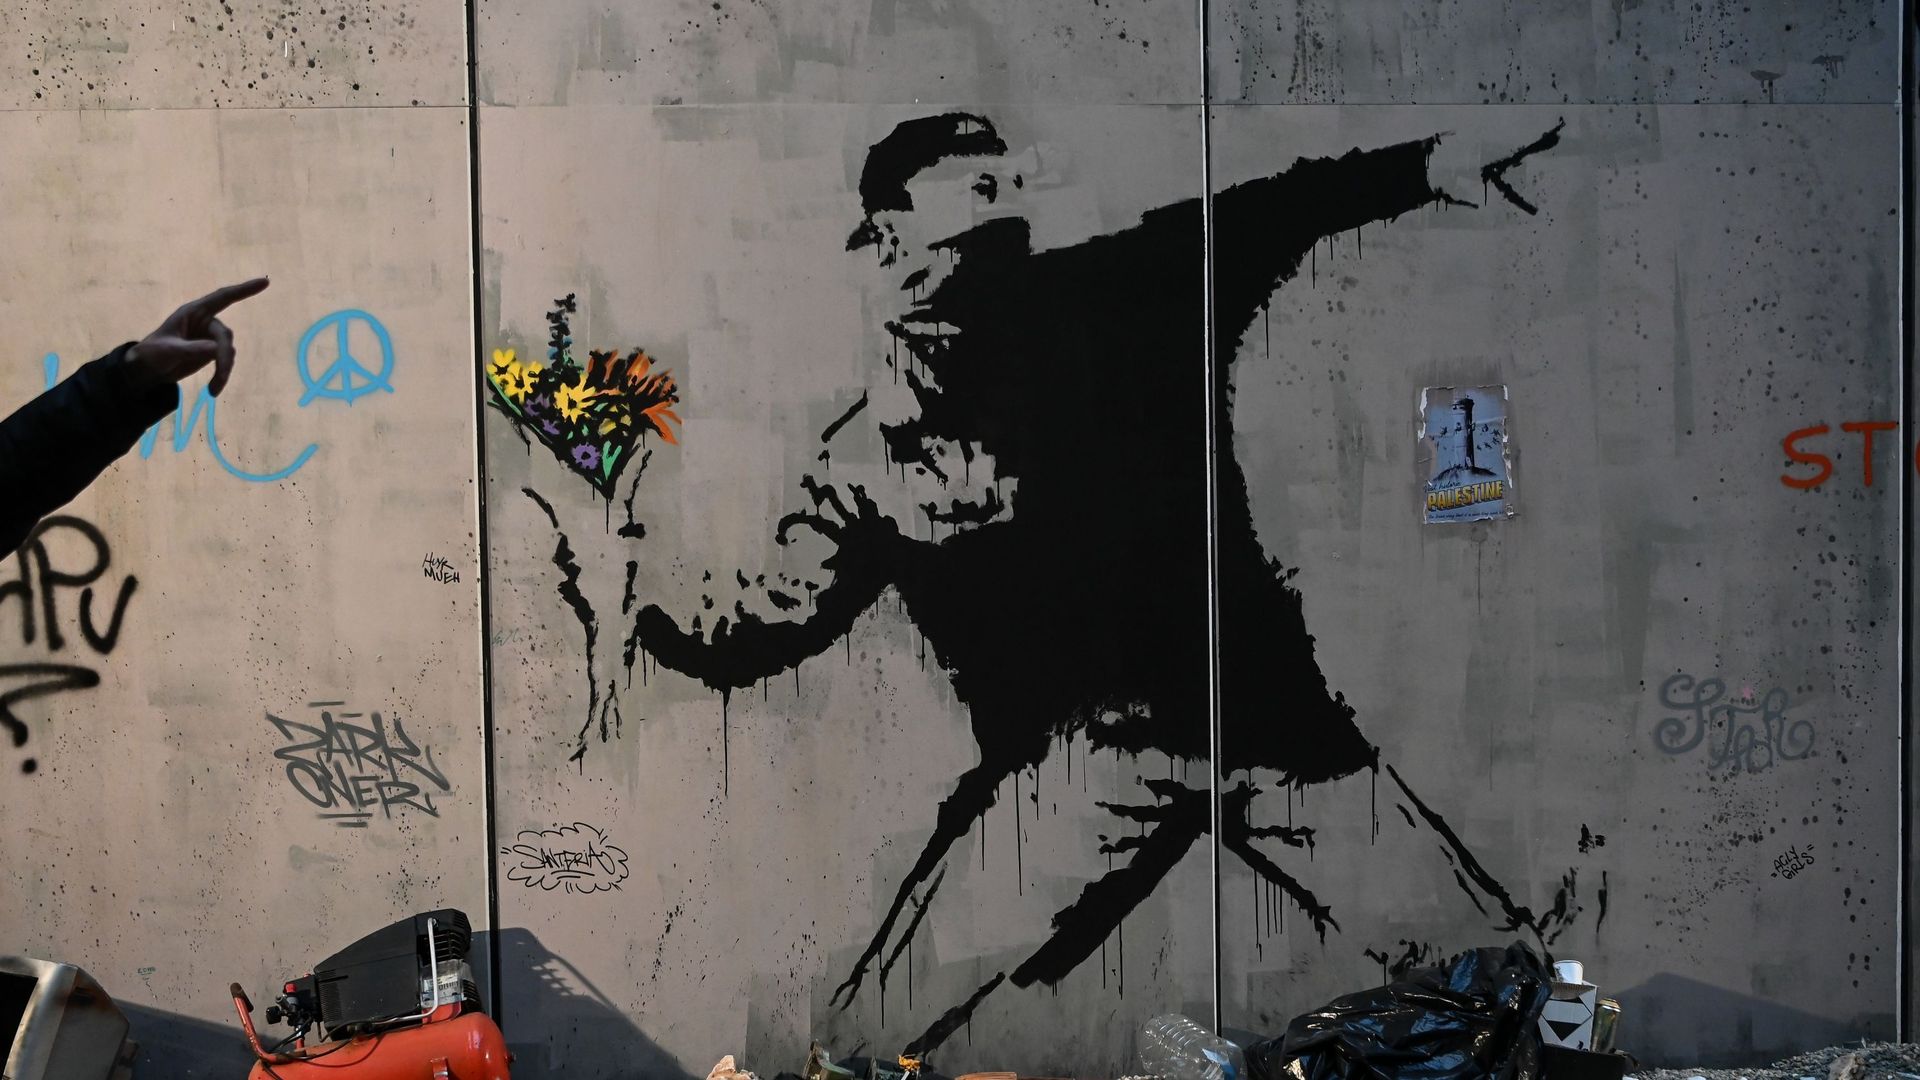 Œuvre d’art intitulée "Flower Thrower" sur le "Mur de Bethléem" de Banksy pendant l’exposition "The World of Banksy at The Immersive Experience" qui ouvre ses portes à la gare centrale de Milan, en Italie, le 2 décembre 2021.